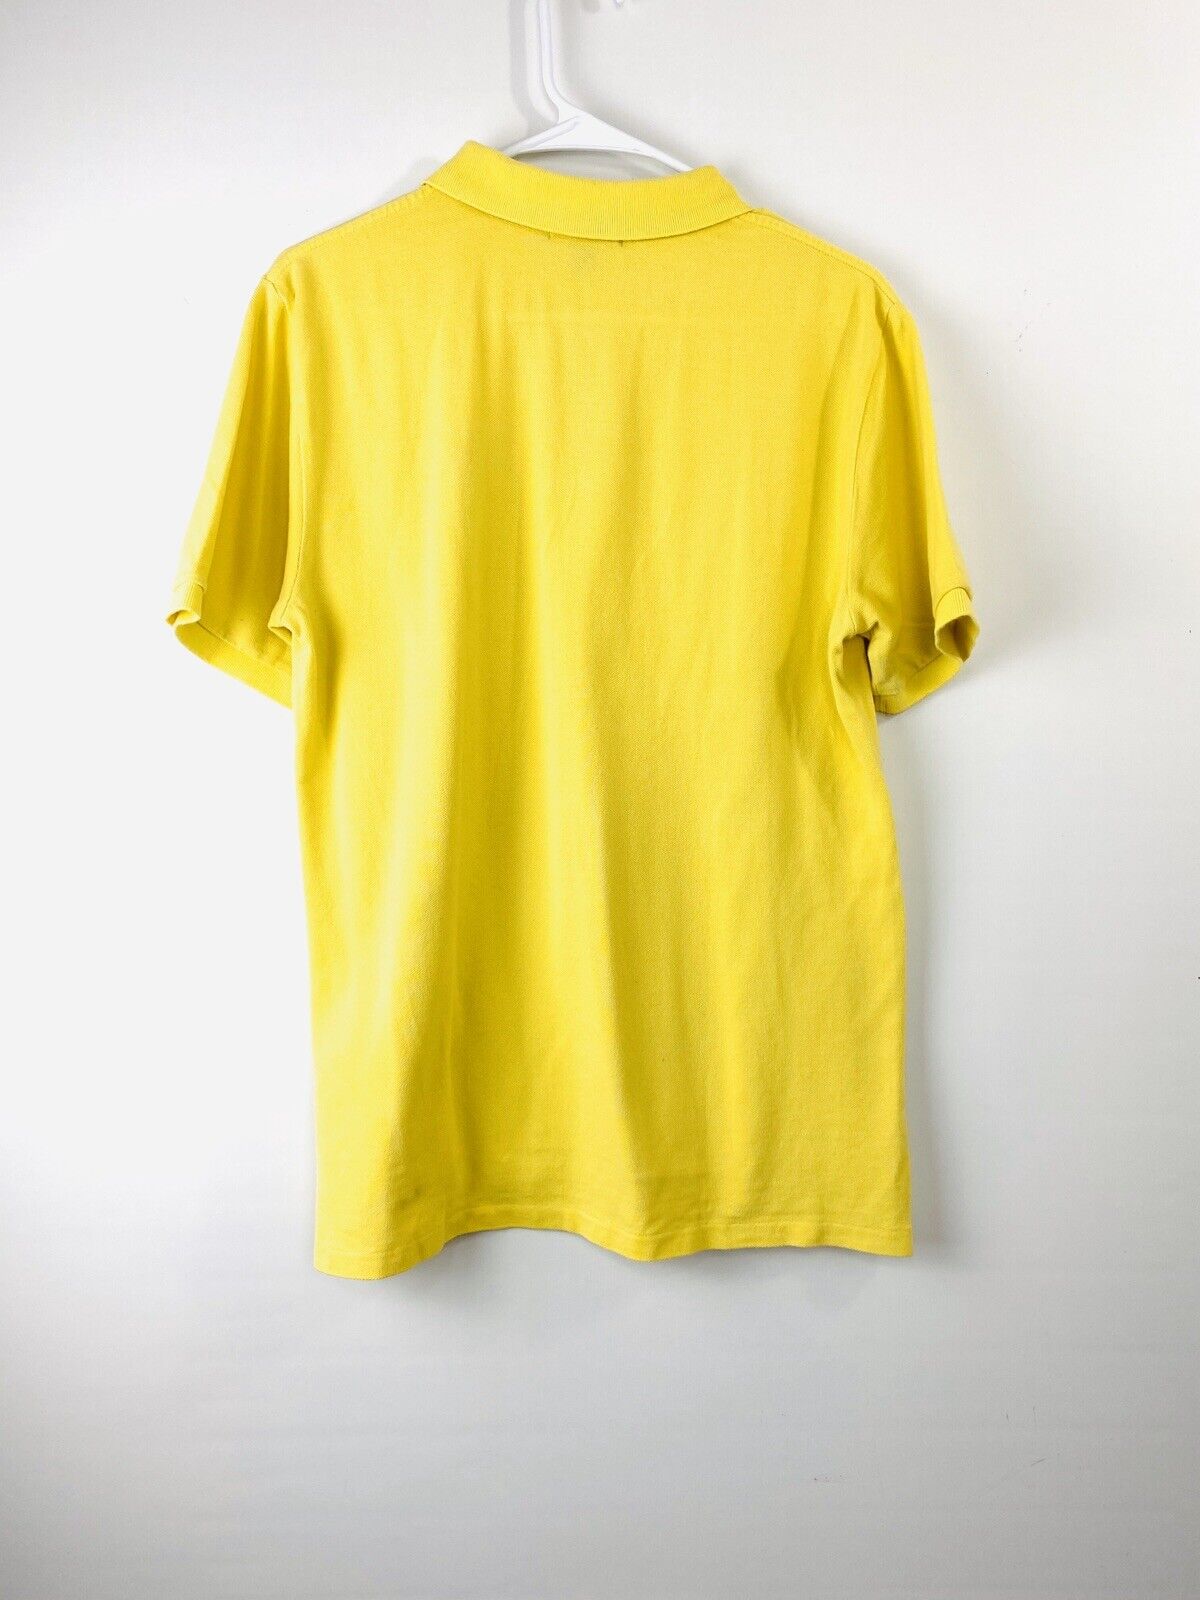 Polo Ralph Lauren Mens Shirt Sz XL Yellow w/ Blue Logo Short Sleeve RK02